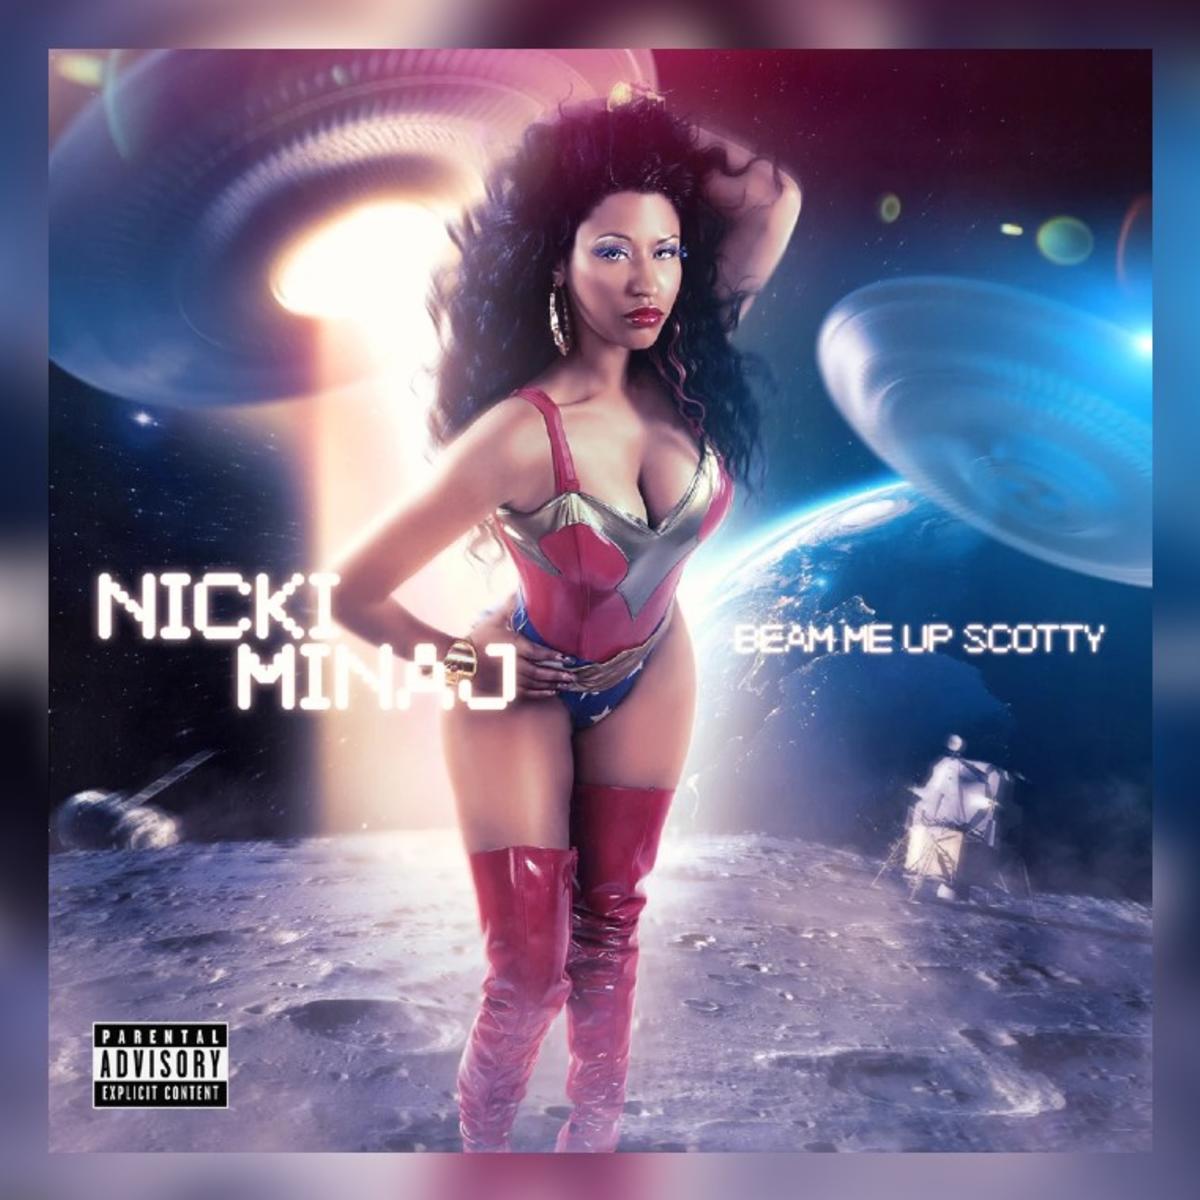 Nicki Minaj Releases “Seeing Green” With Drake & Lil Wayne